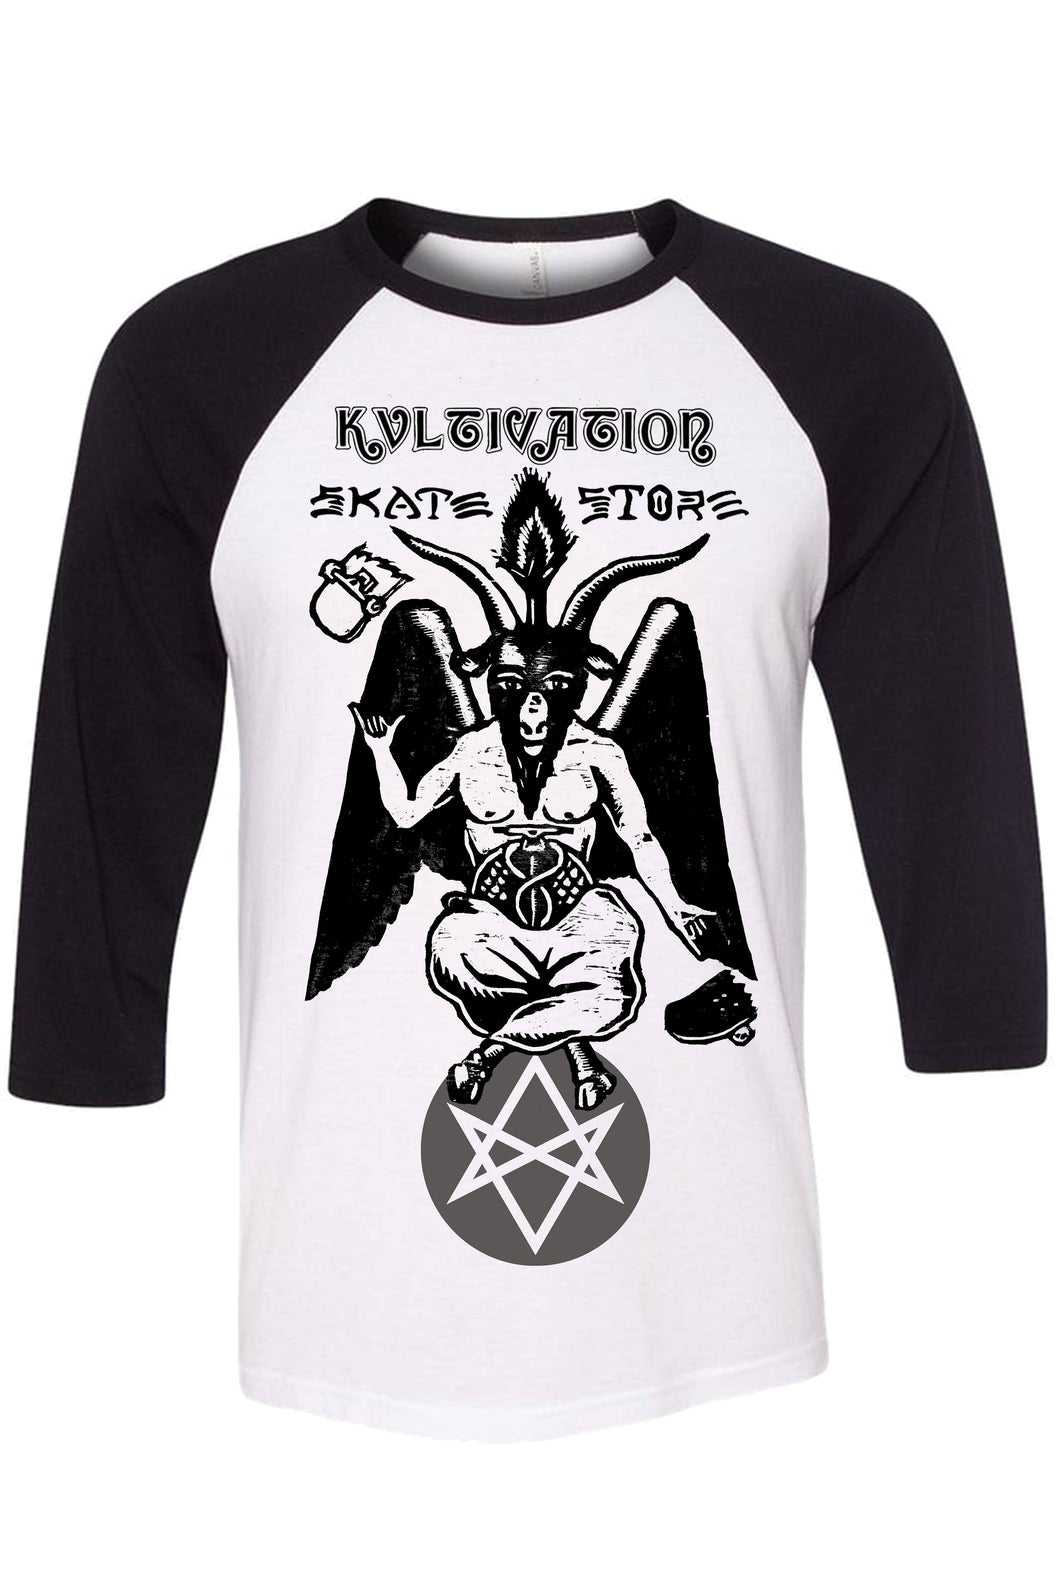 Kvltivation Skate Store - Baphomet Raglan Shirt